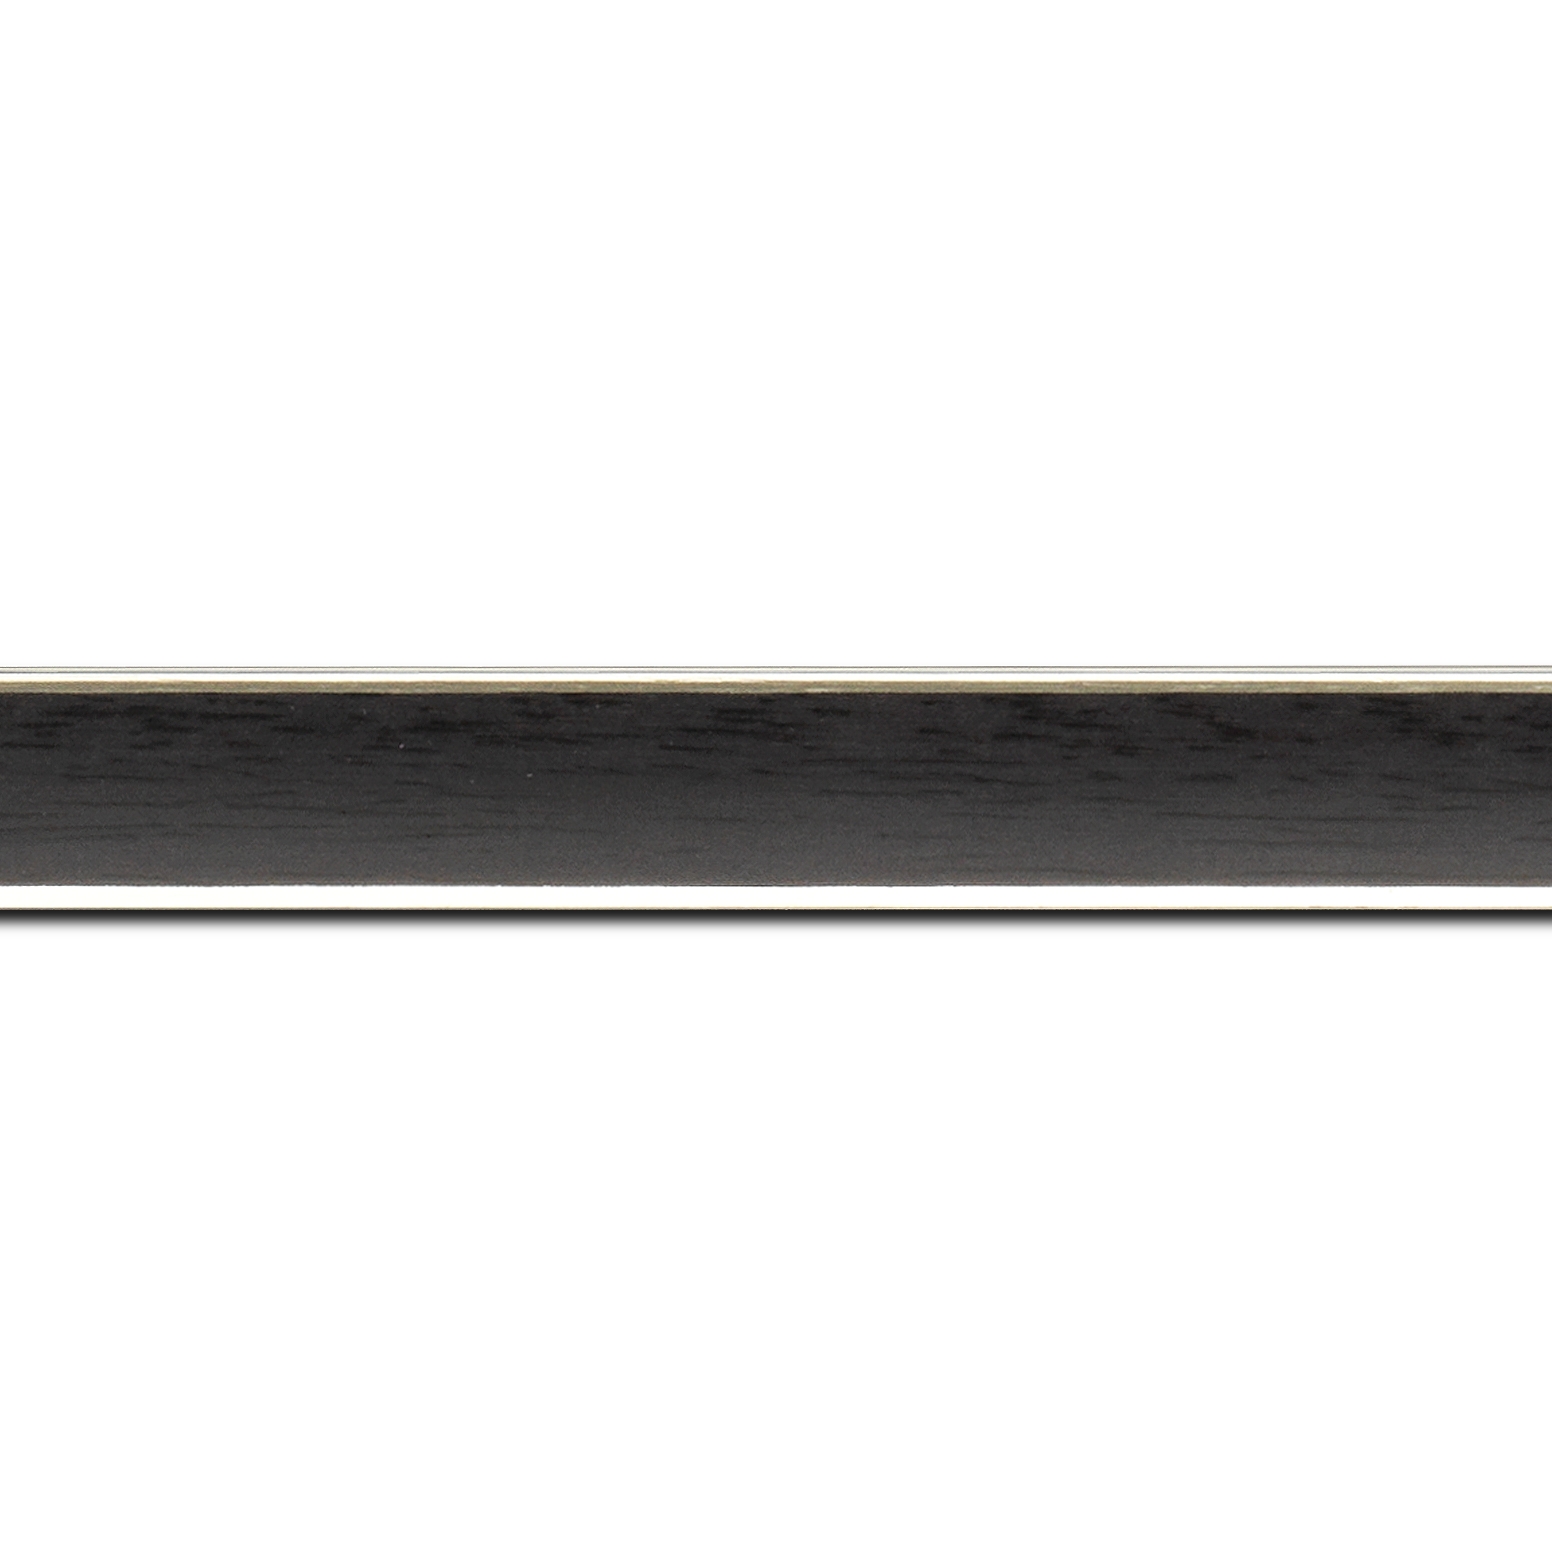 Pack par 12m, bois profil concave largeur 2.4cm couleur noir  satiné  filet argent de chaque coté (pore du bois apparent) (longueur baguette pouvant varier entre 2.40m et 3m selon arrivage des bois)